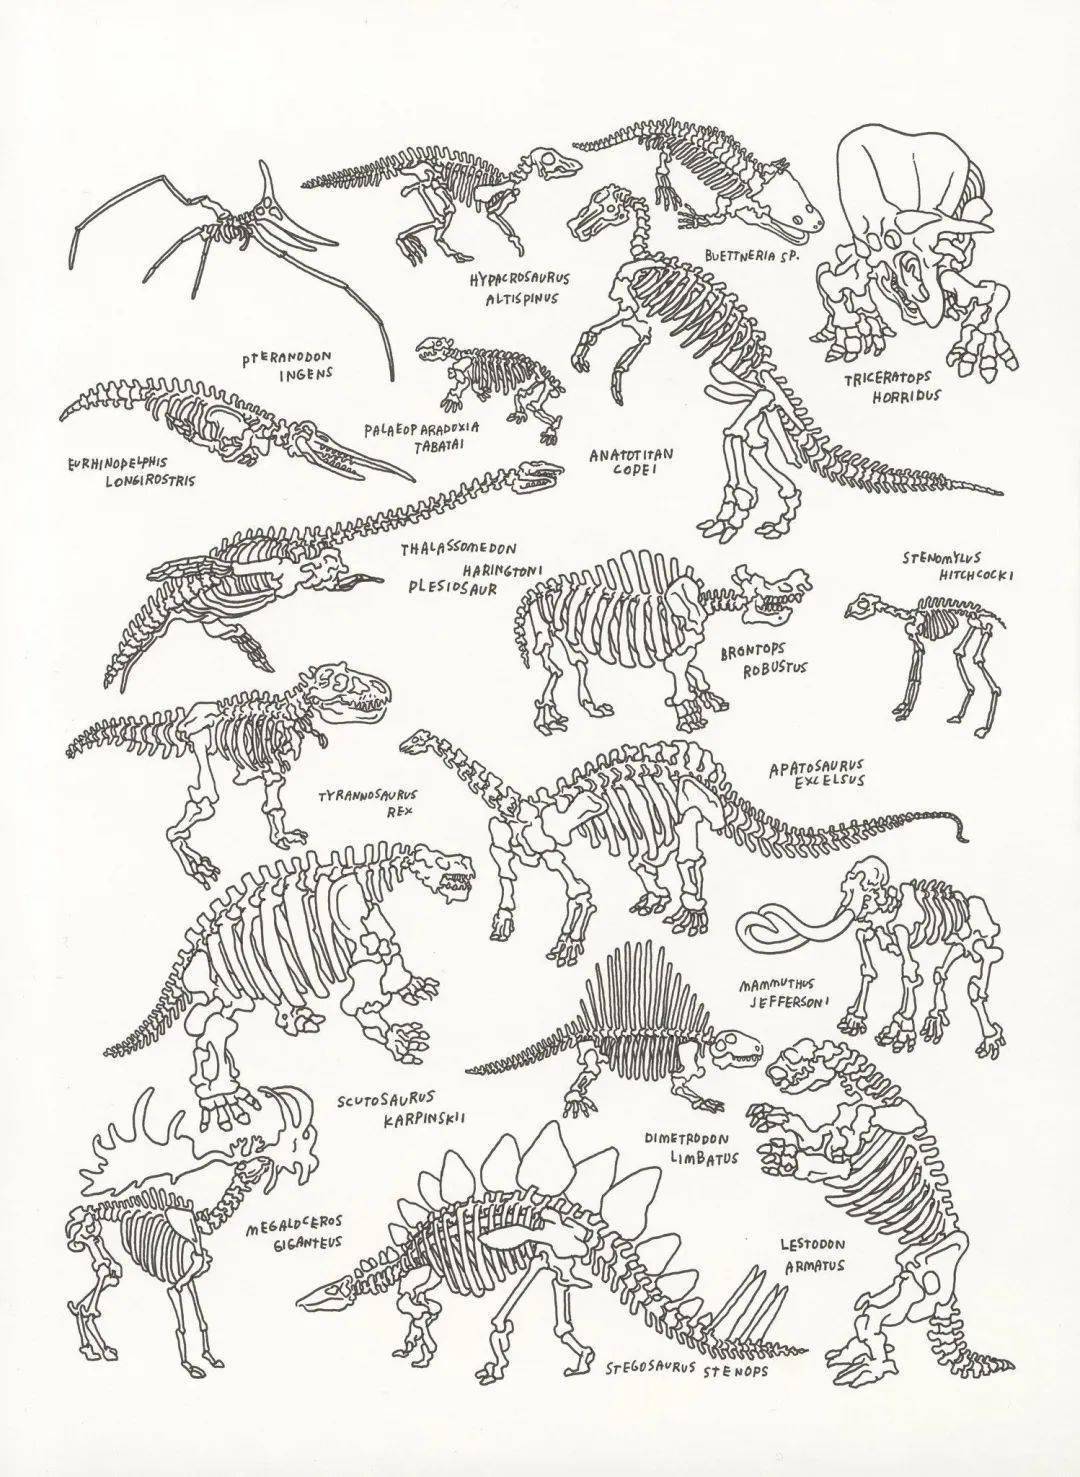 三角龙和霸王龙哪个更厉害?如何区分植食性恐龙和肉食性恐龙?